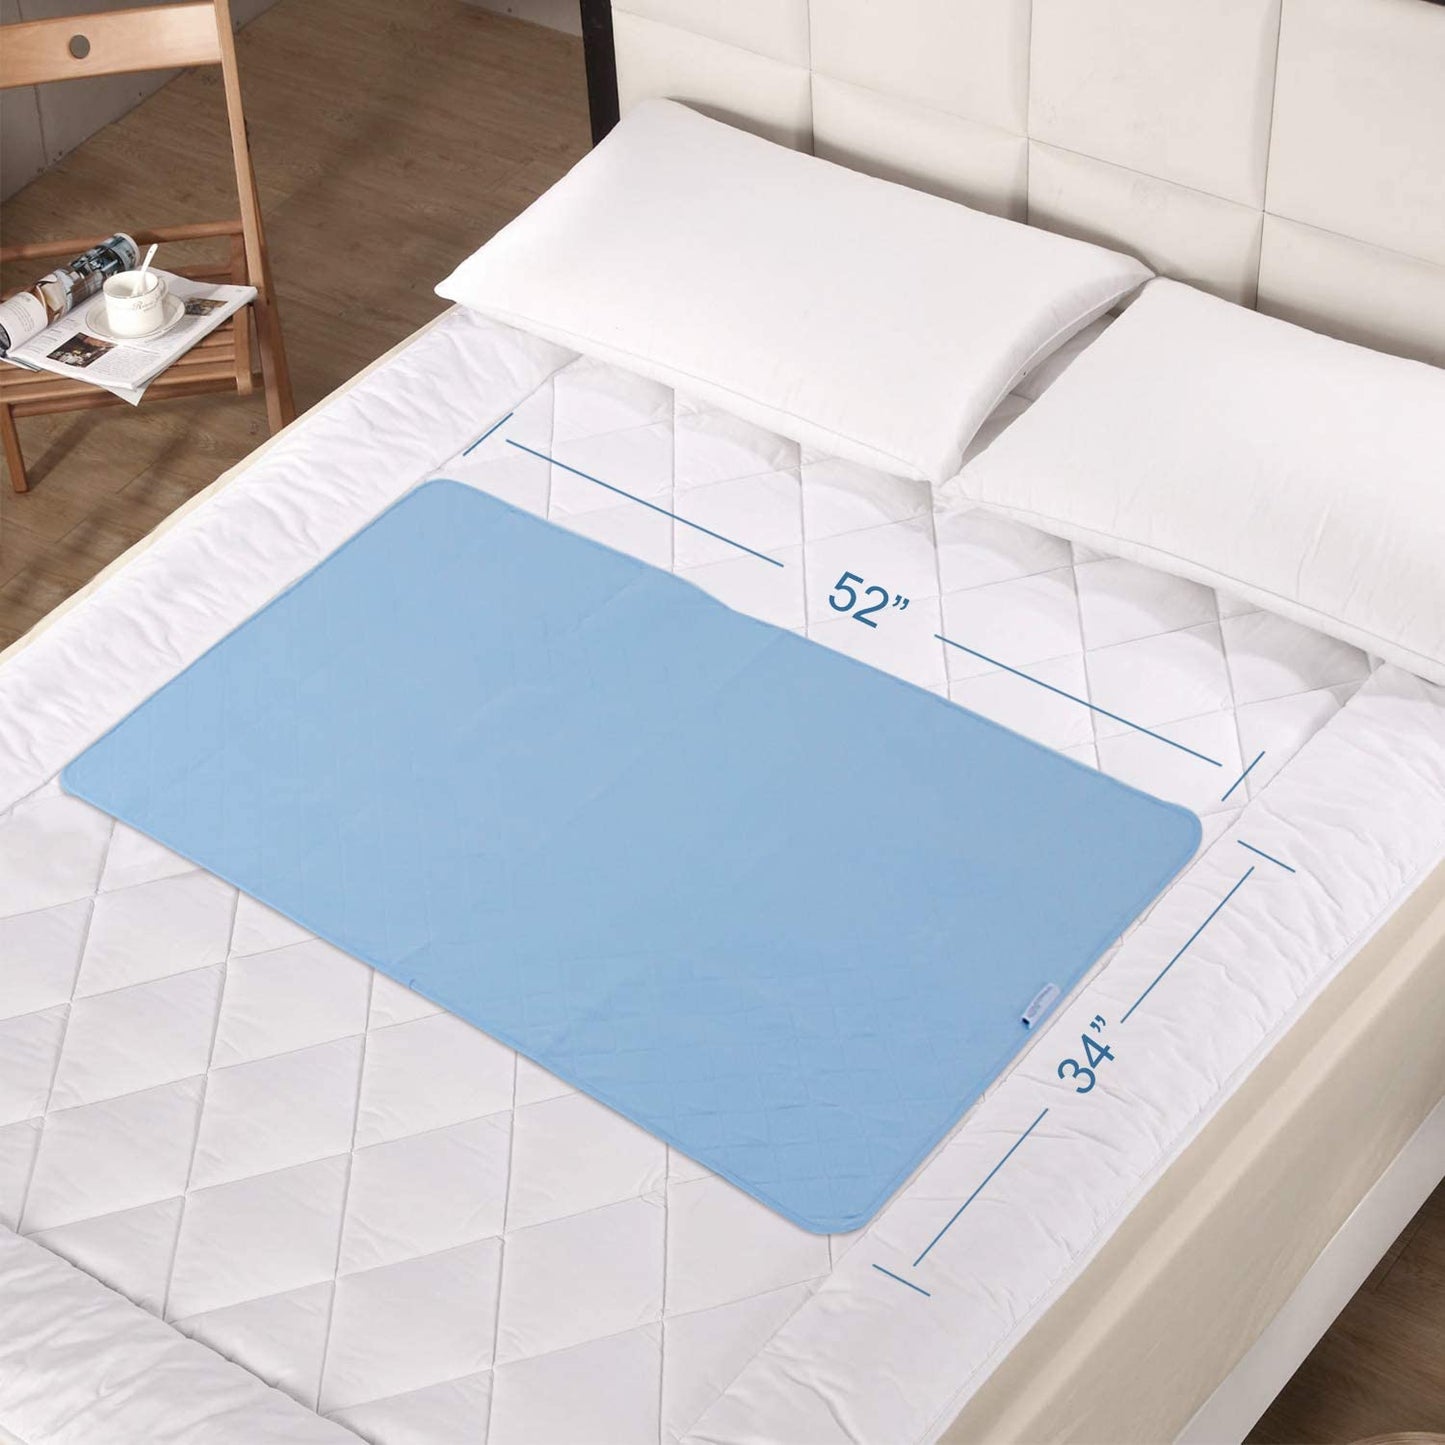 Grayson Reusable Bedpads - Reusable Hospital Mattress Pads